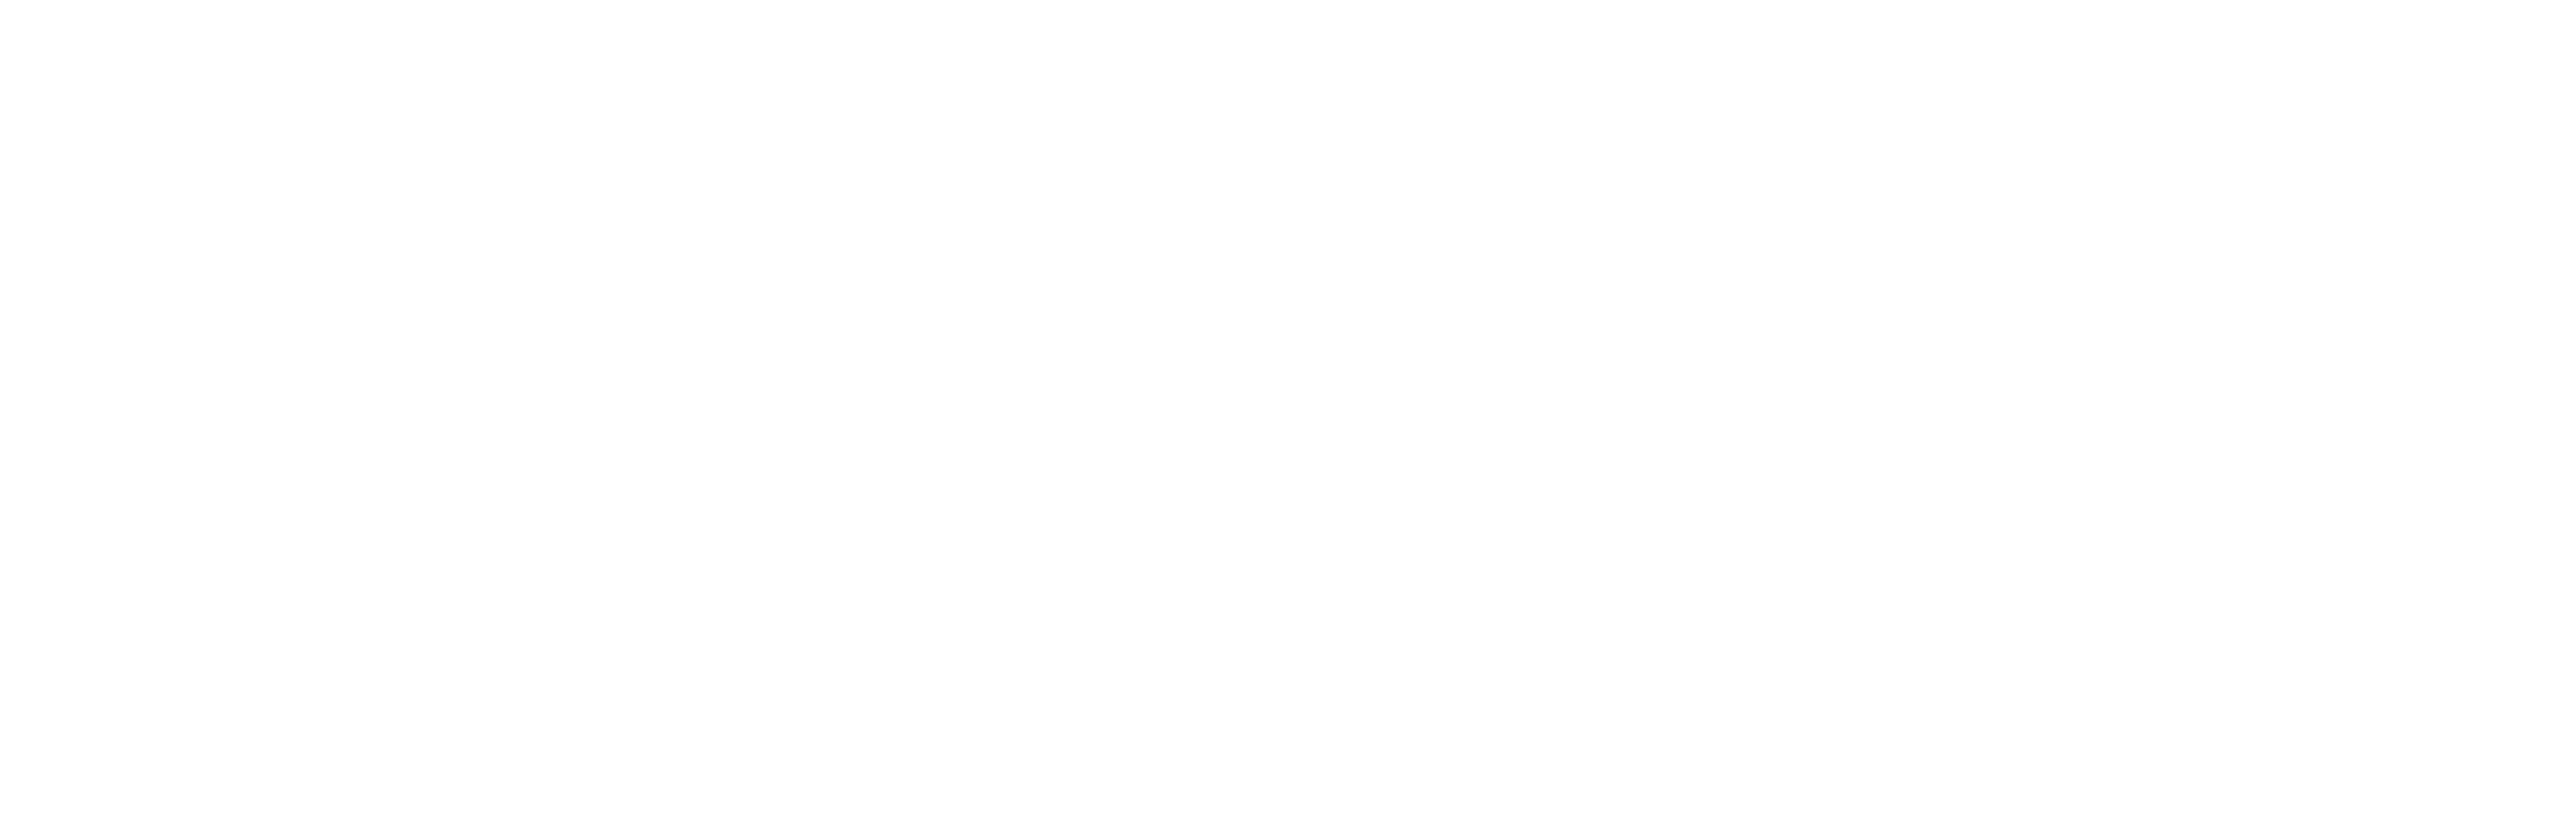 Under Pressure logo